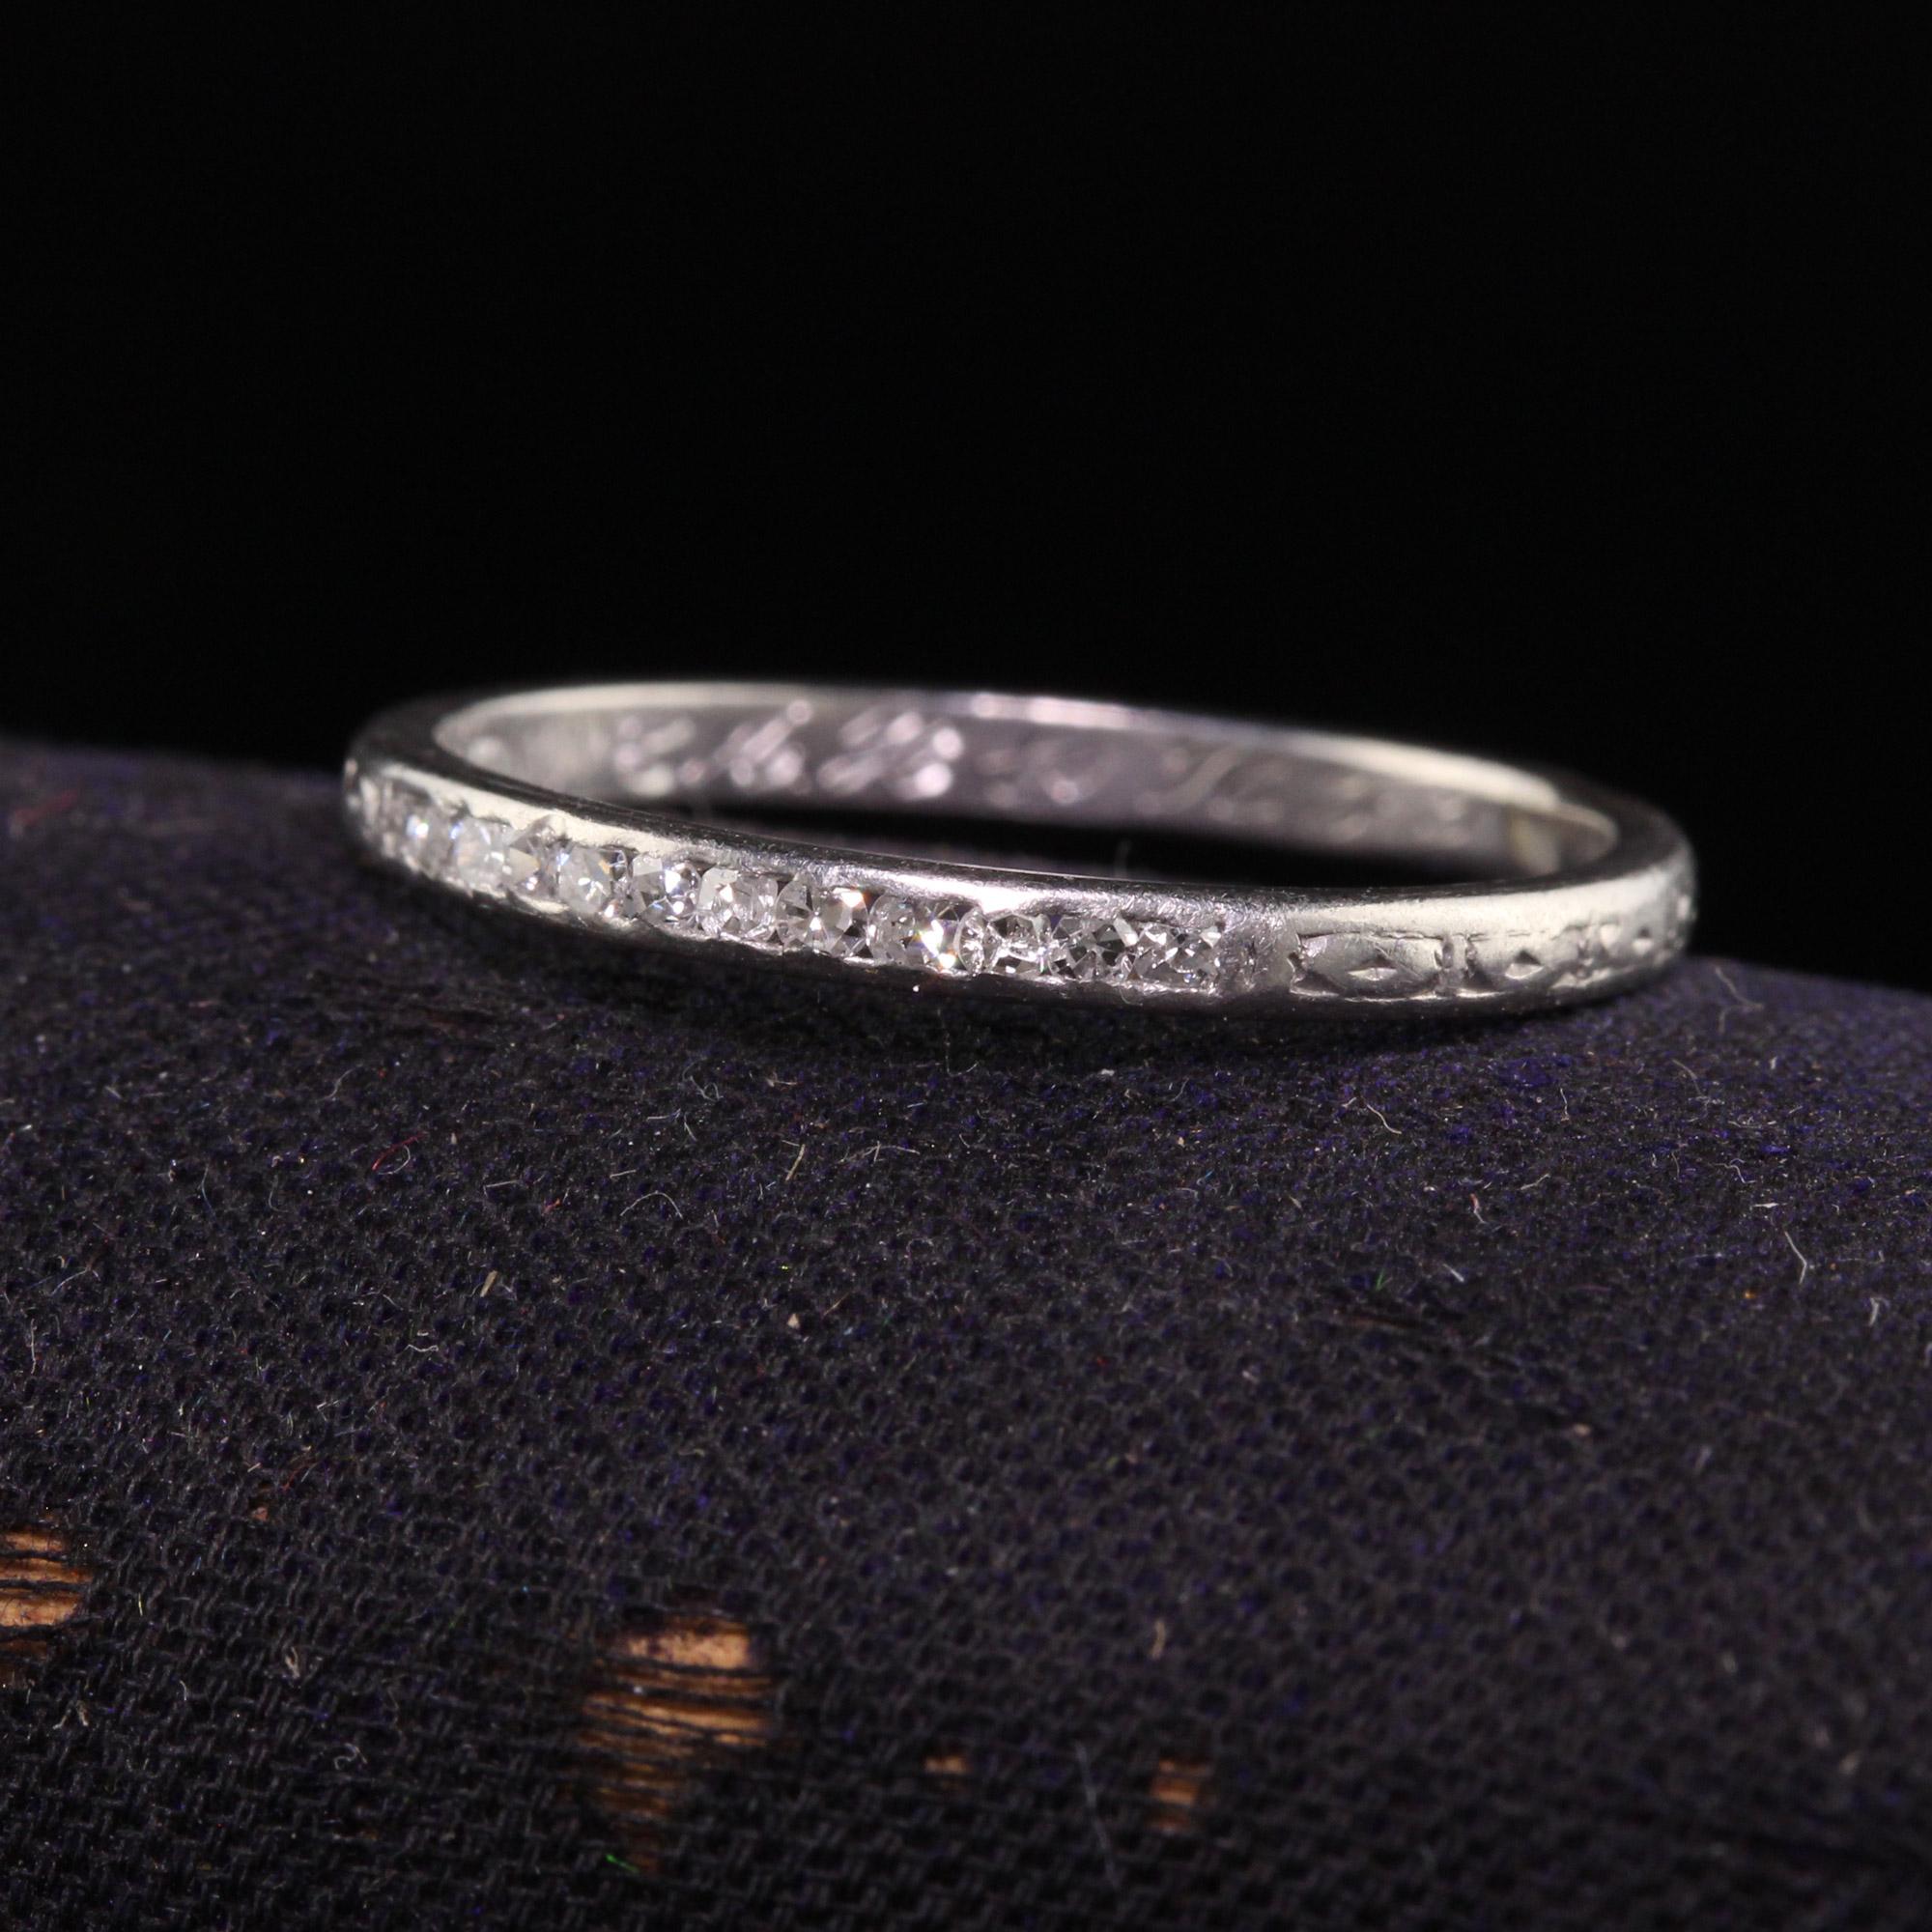 Schöne antike Art Deco Platinum Single Cut Diamond Engaved Hochzeit Band. Dieser schöne Ring ist aus Platin gefertigt. Dieser Ring hat einzelne geschliffene Diamanten in der oberen Reihe mit Gravuren. Auf der Innenseite des Bandes ist eingraviert